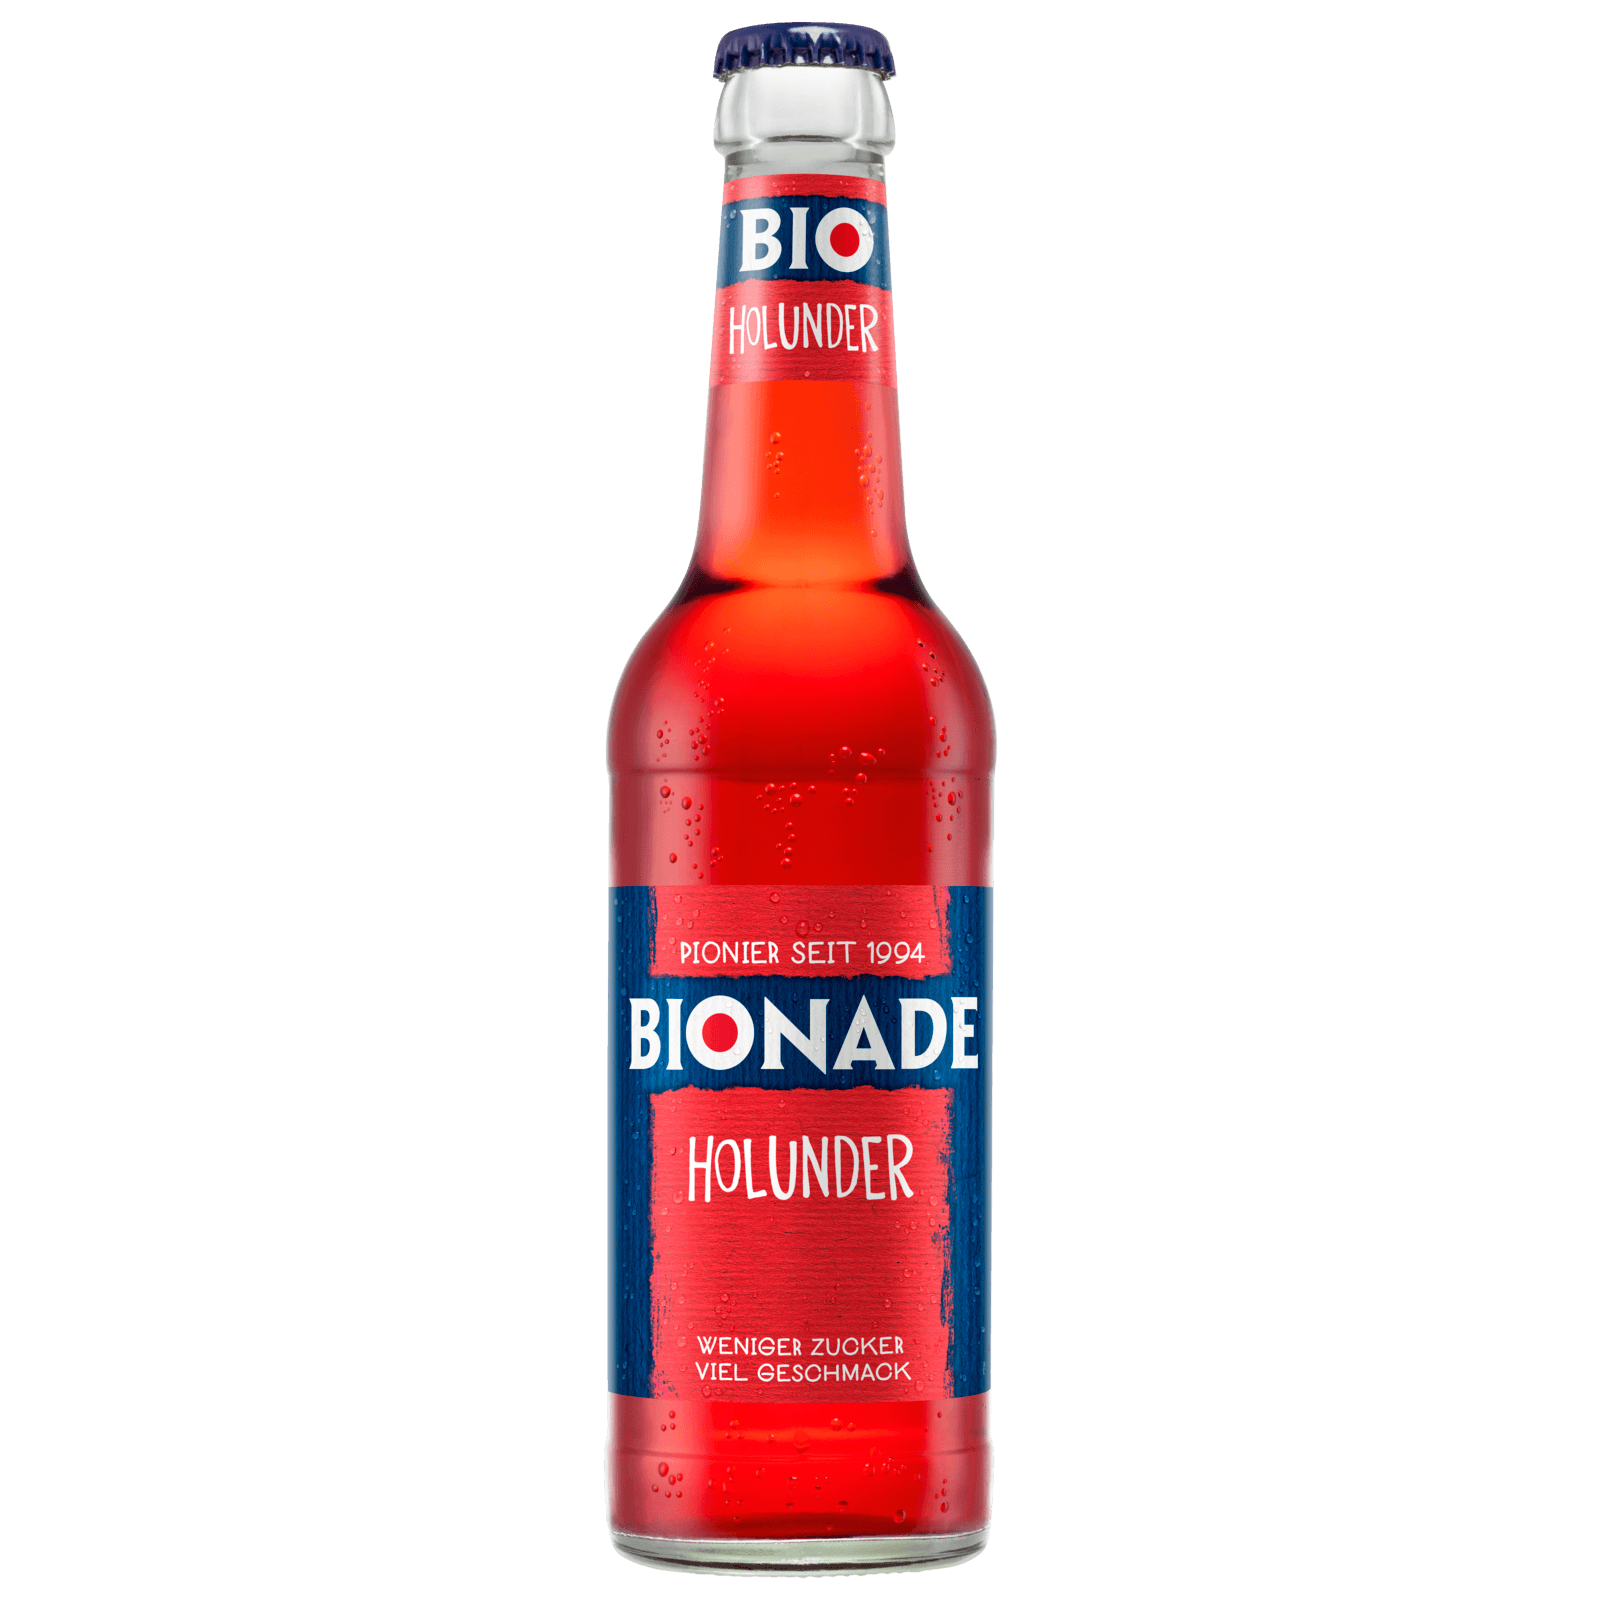 Bionade Holunder 0,33l bei REWE online bestellen!